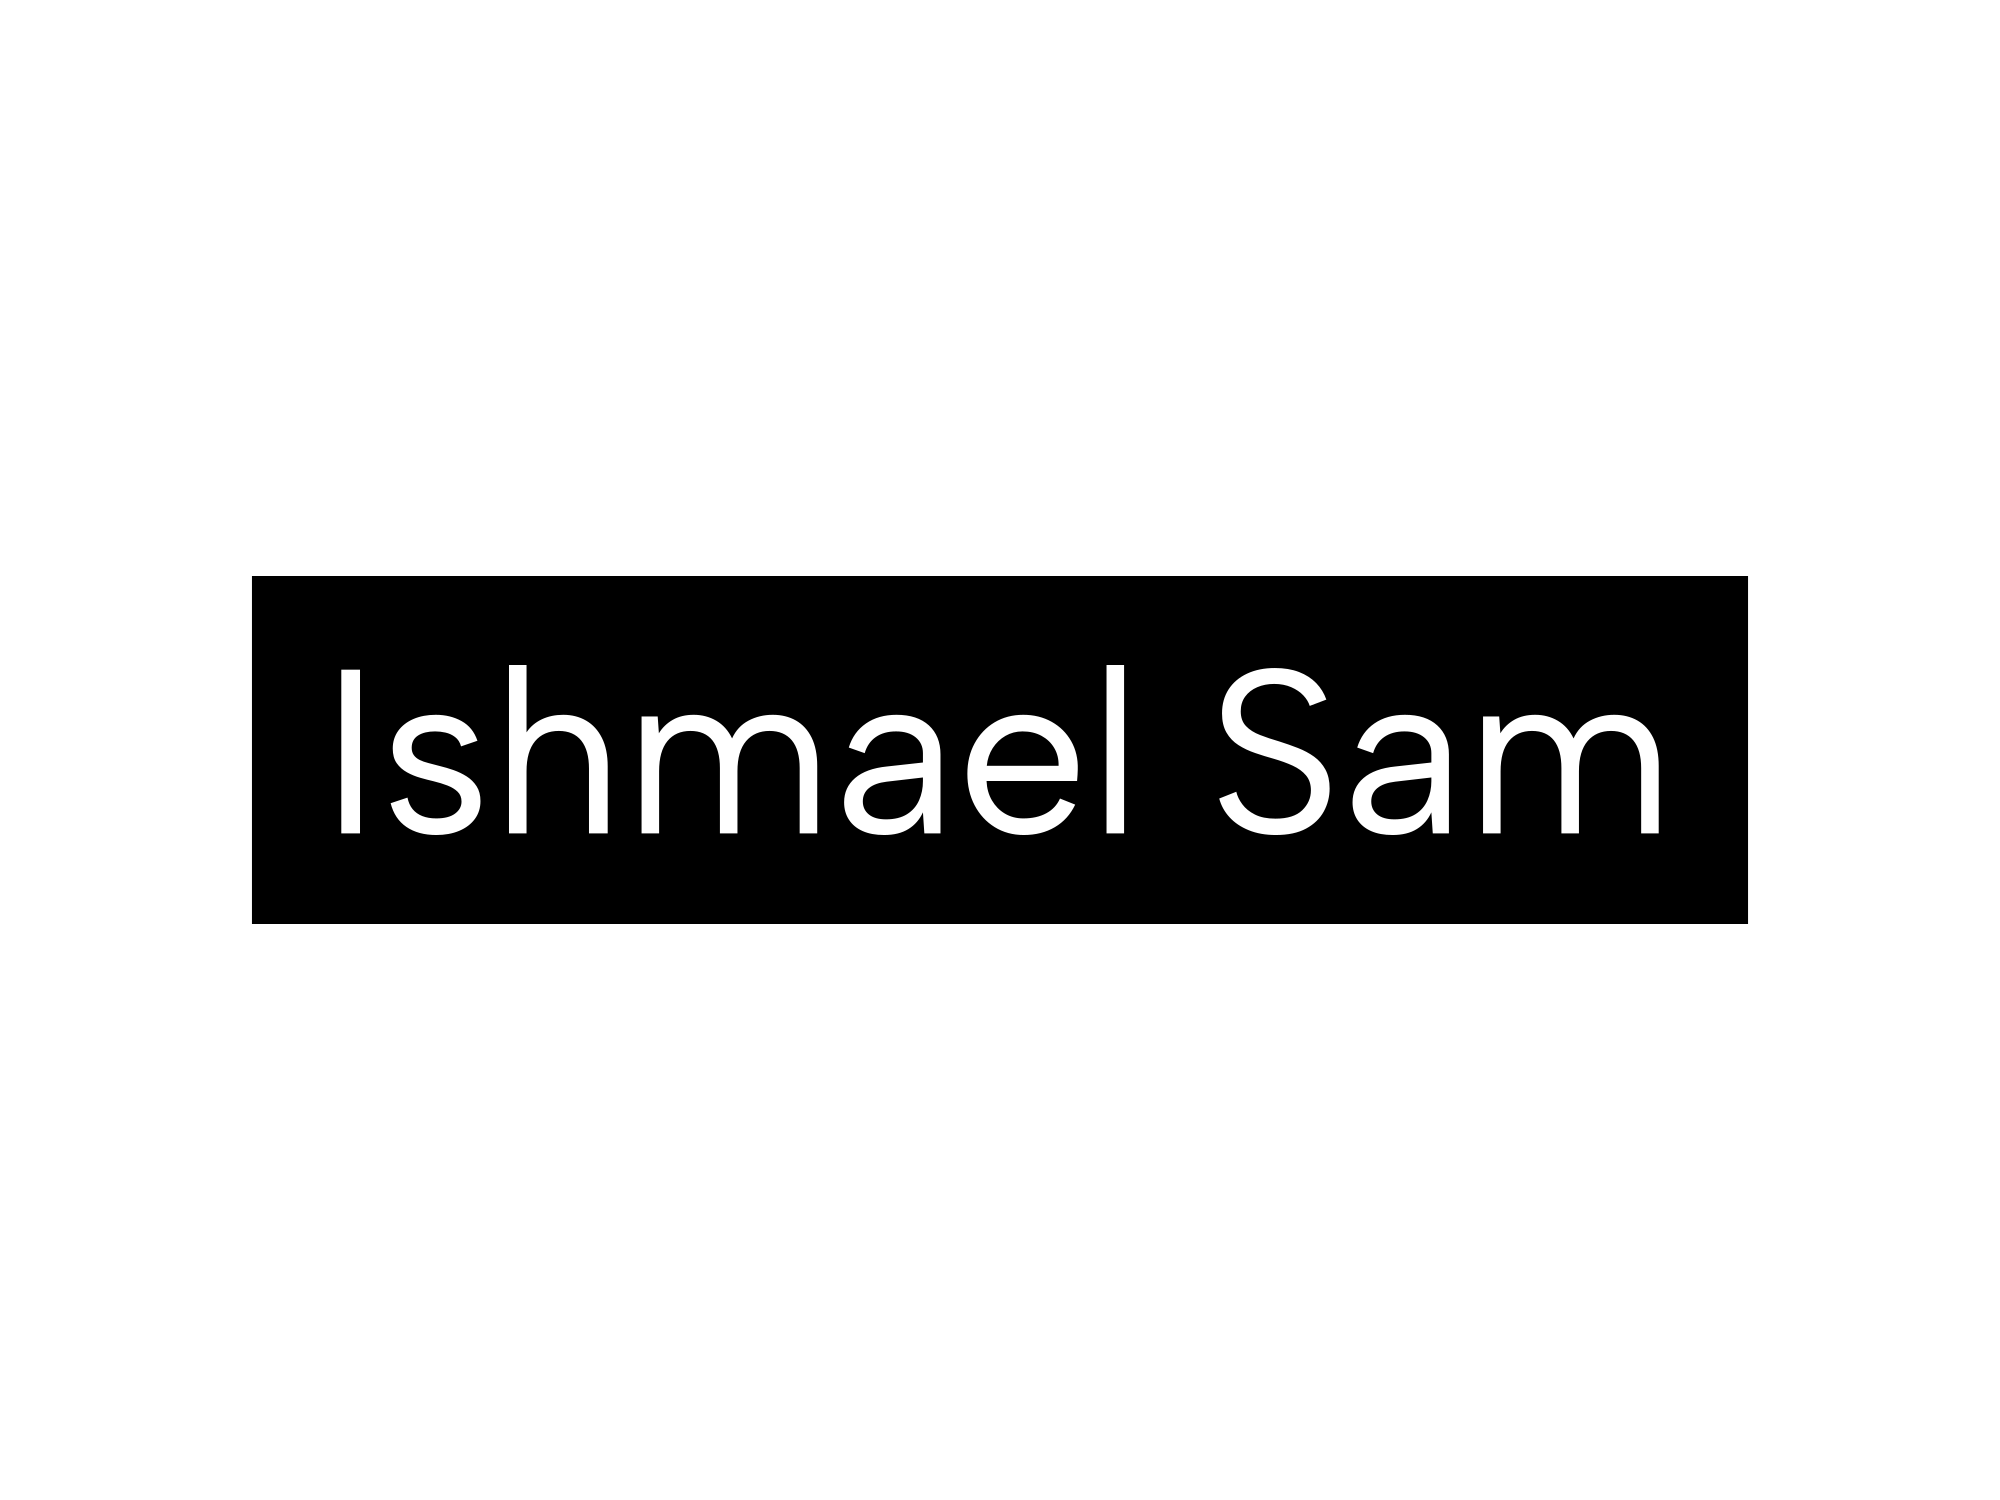 Ishmael Sam